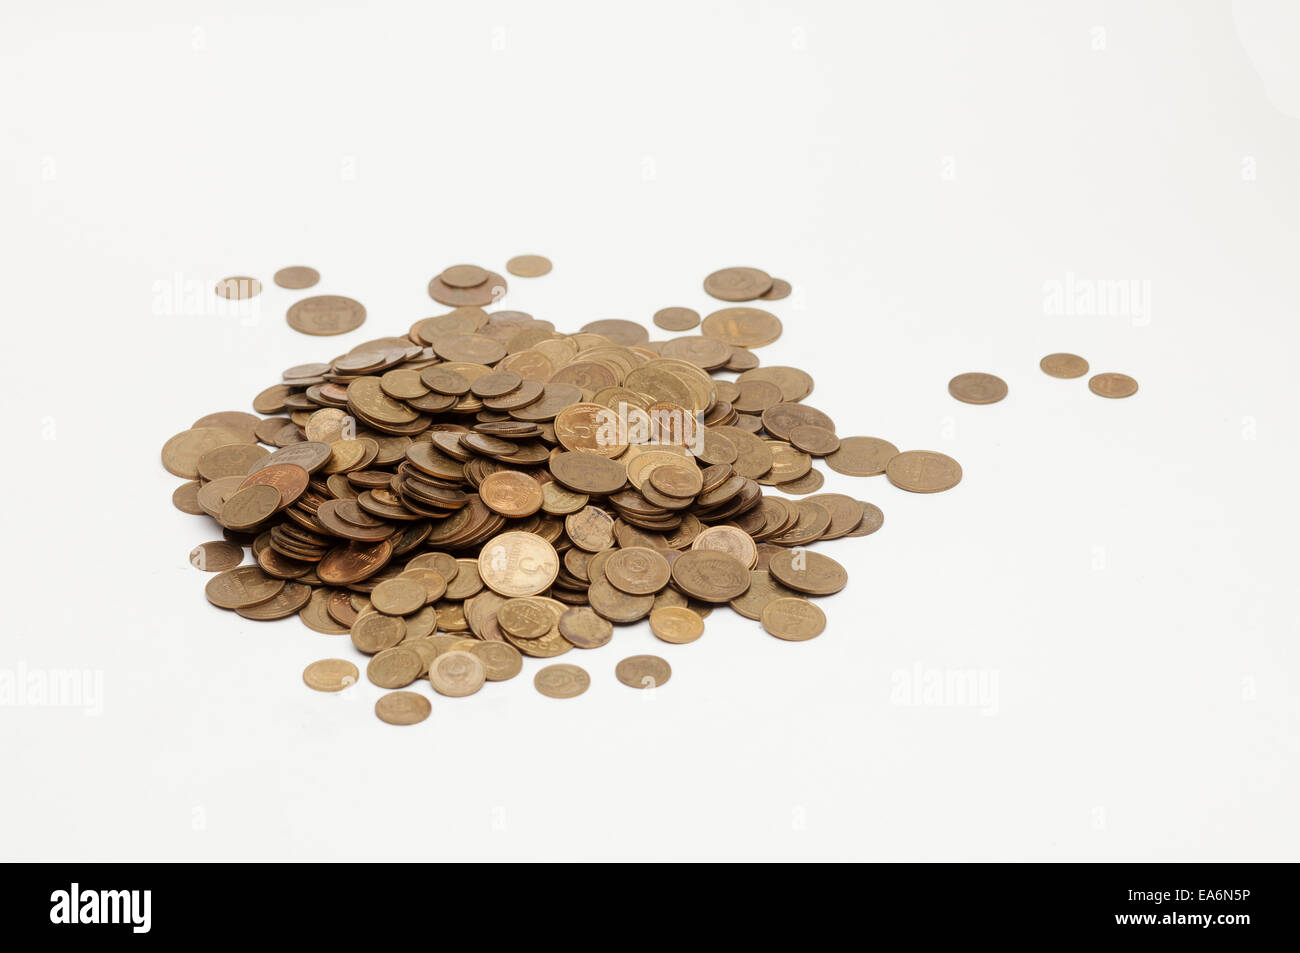 Soviet penny Stock Photo